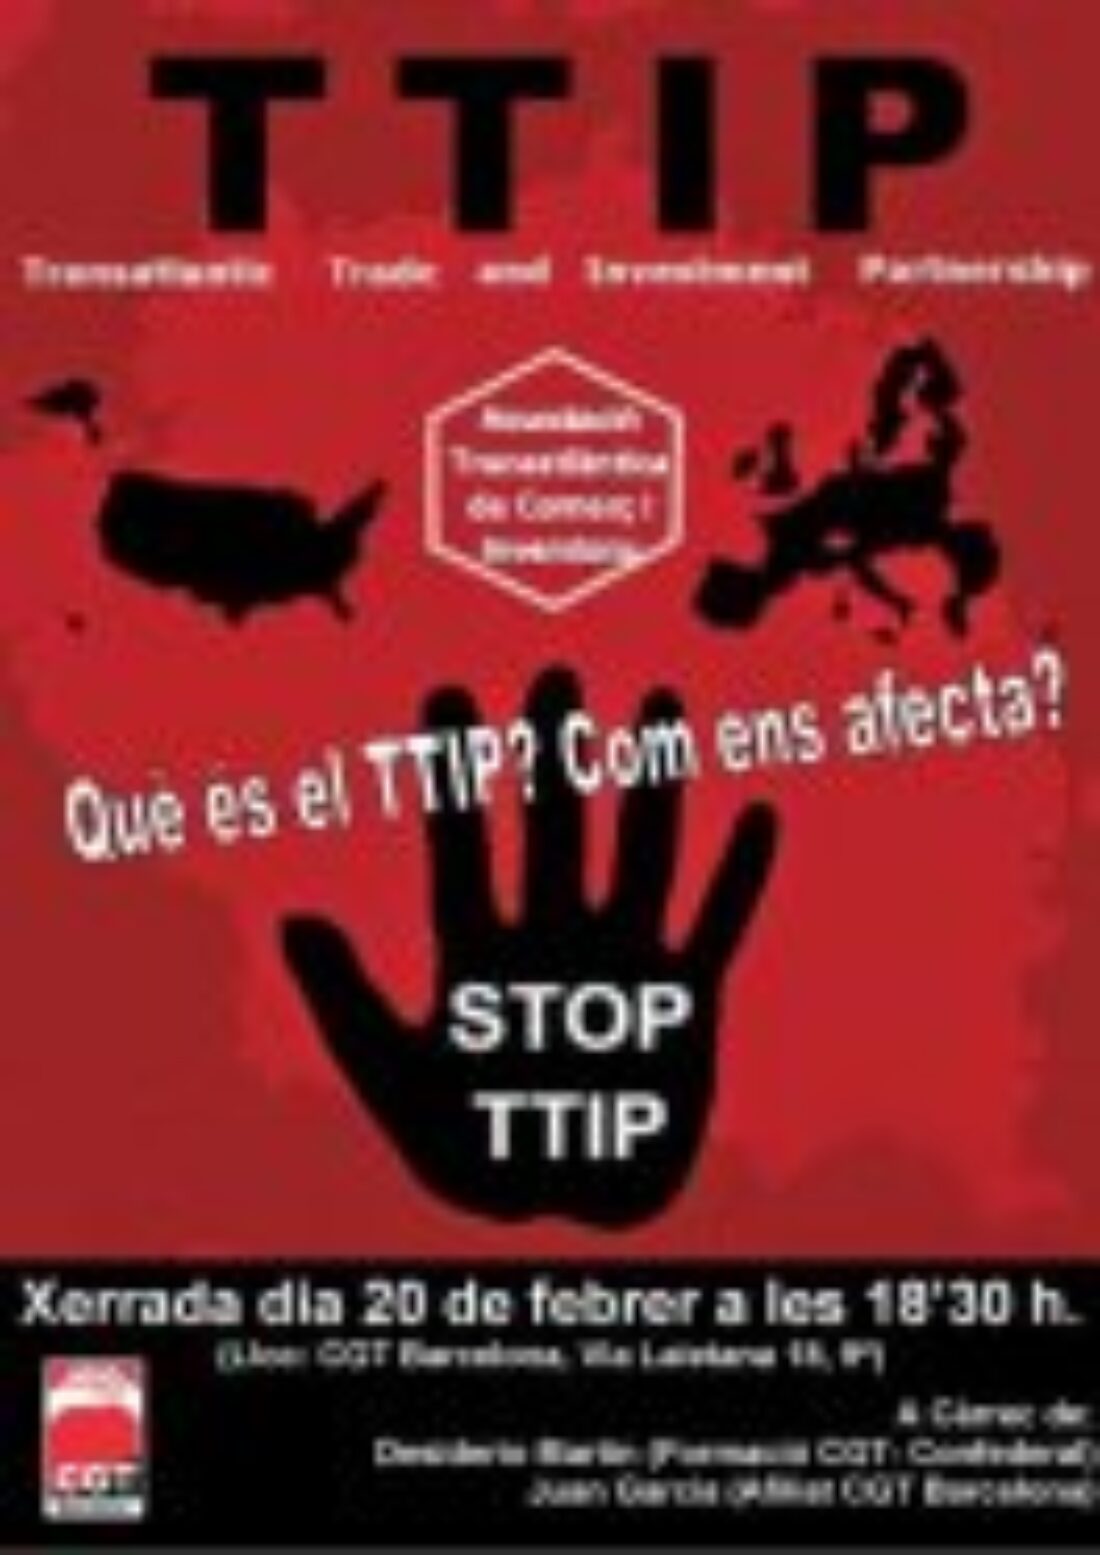 20-F: Charla: ¿Qué es el TTIP y cómo nos afecta?